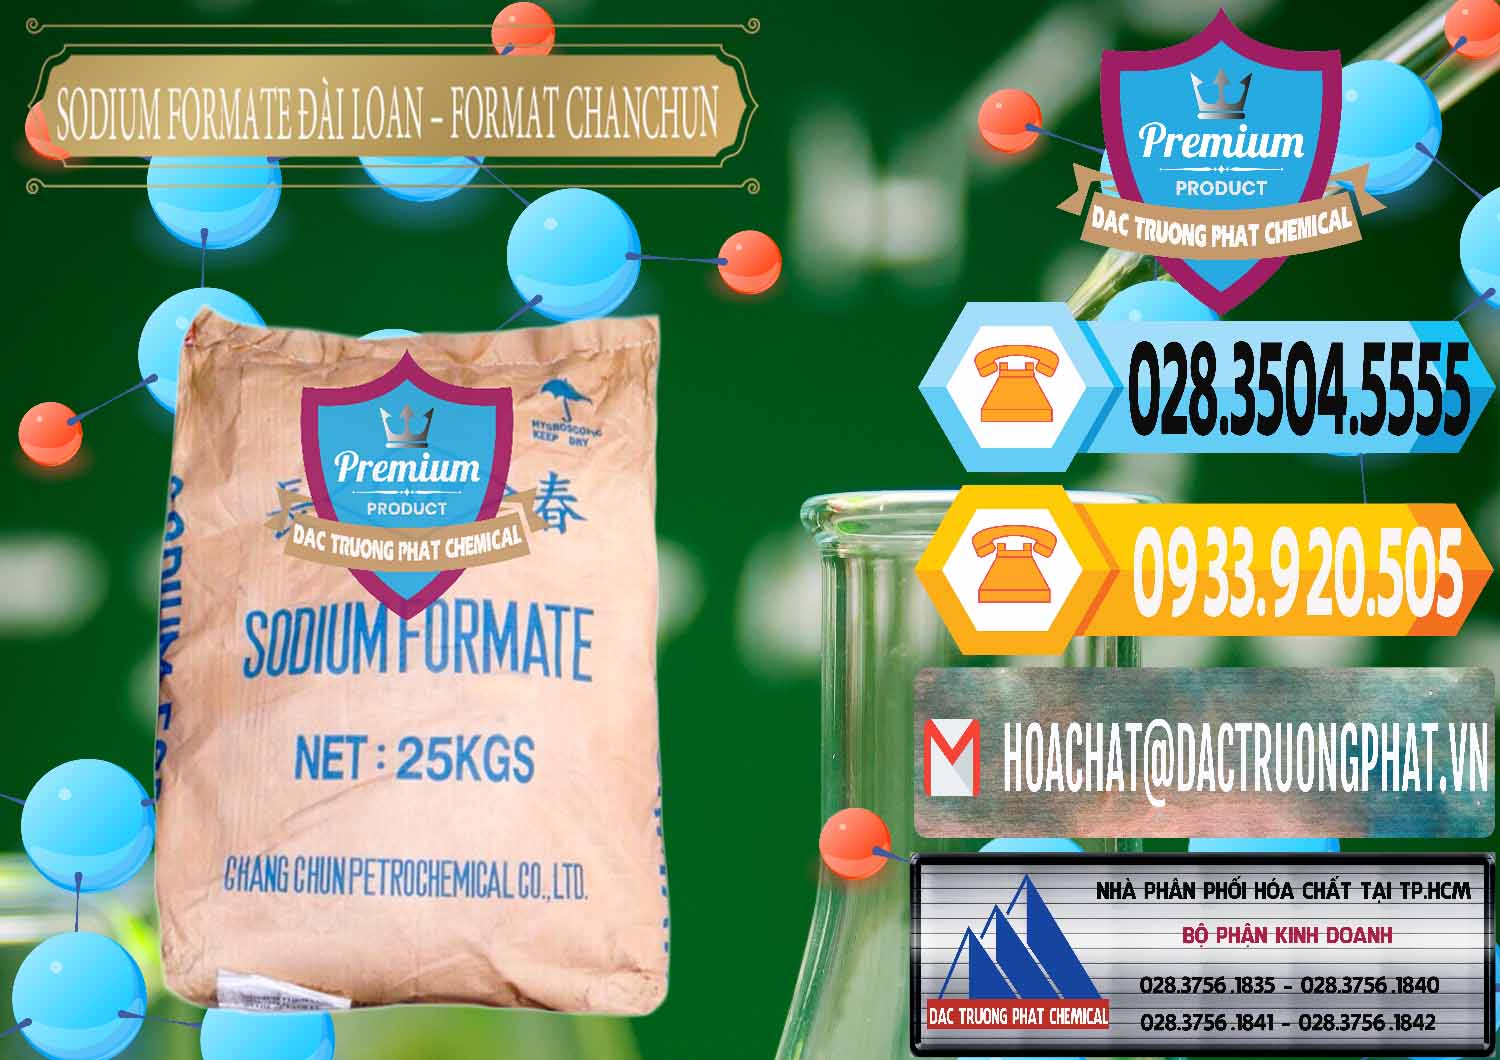 Đơn vị bán _ cung cấp Sodium Formate - Natri Format Đài Loan Taiwan - 0141 - Cung cấp & phân phối hóa chất tại TP.HCM - hoachattayrua.net